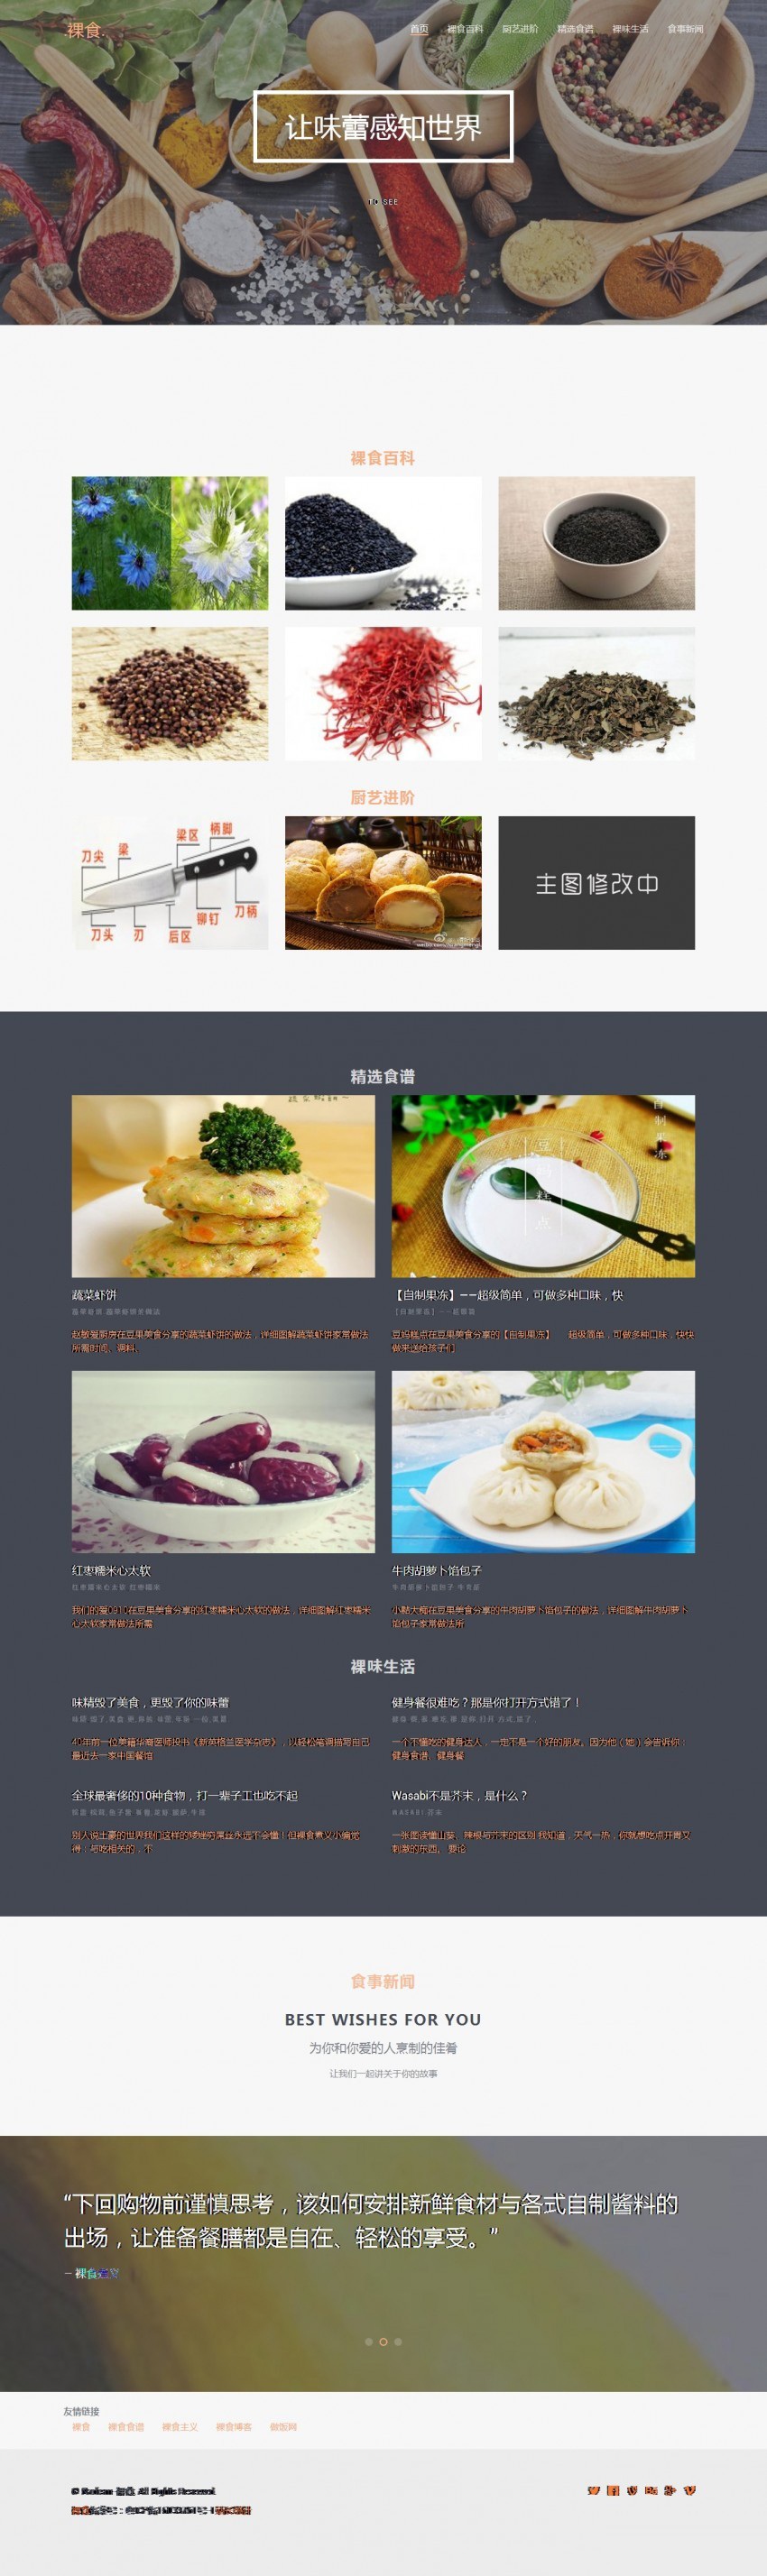 食品网站模板